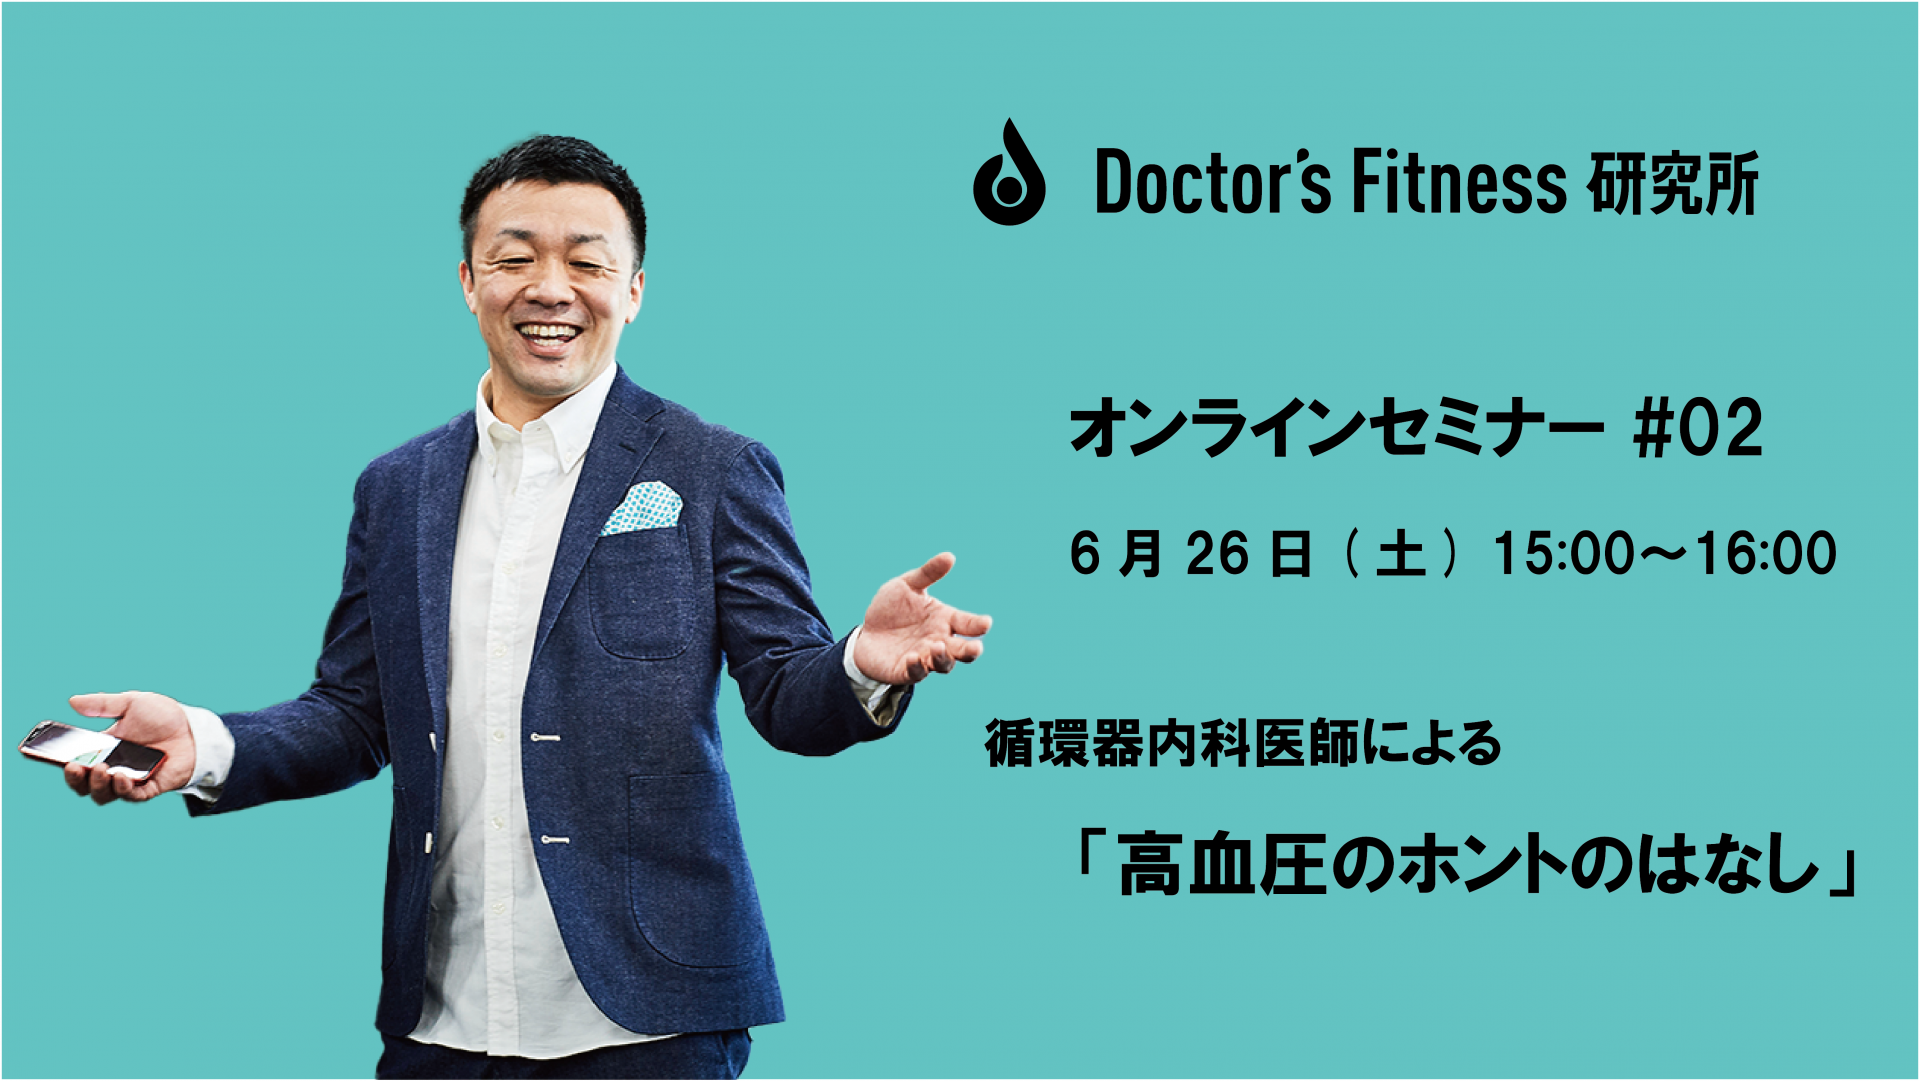 Doctor’s Fitness 研究所のオンラインセミナーが開催されます